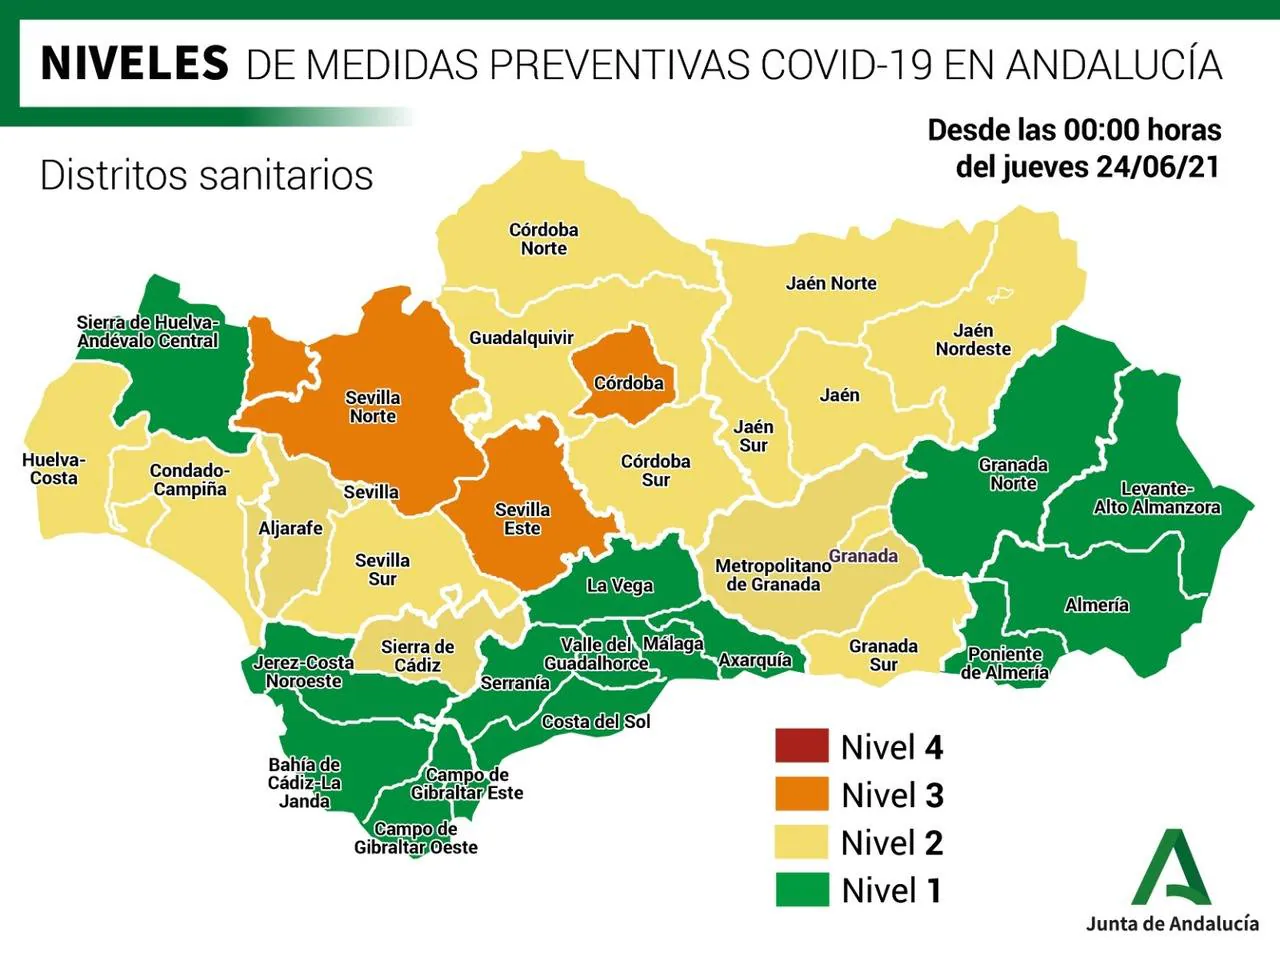 Coronavirus Andalucía: Consulta los niveles de alerta y las restricciones vigentes desde el 1 de julio en los municipios de Andalucía